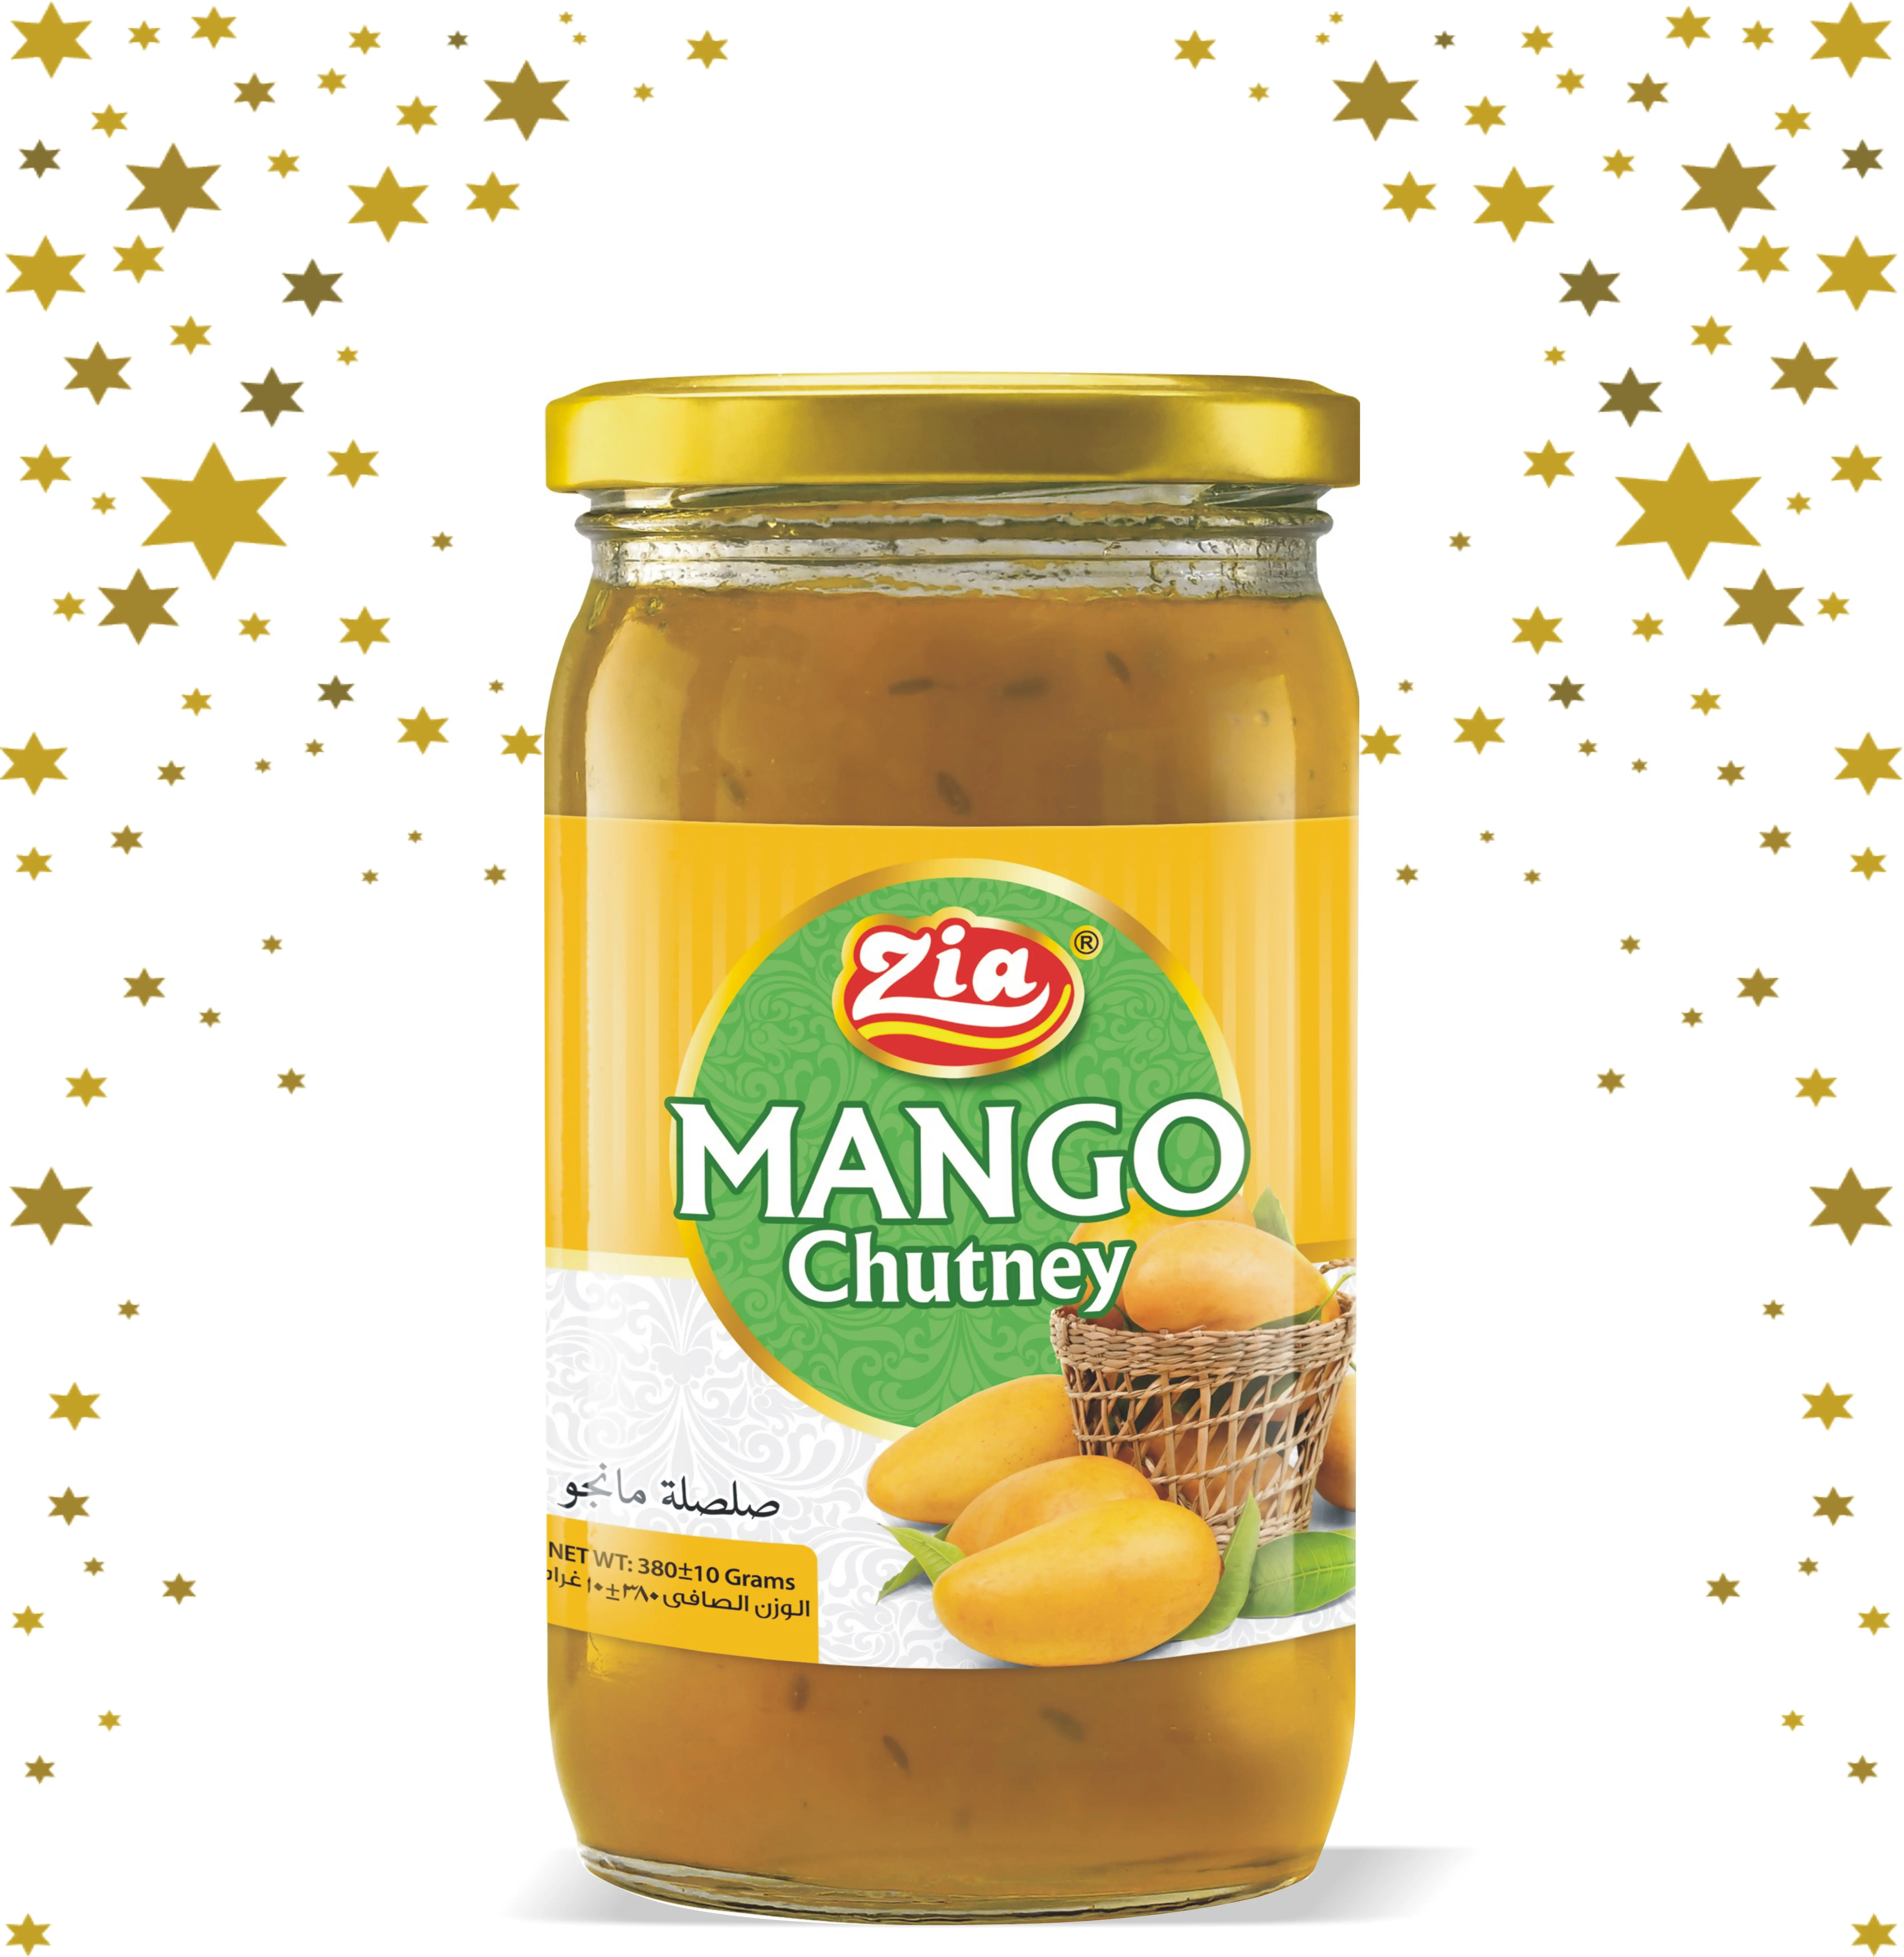 Высококачественный соус из манго Chutney, лучший пищевой аппетит, соус из Зии и манго, здоровый и питательный, идеальный партнер для еды